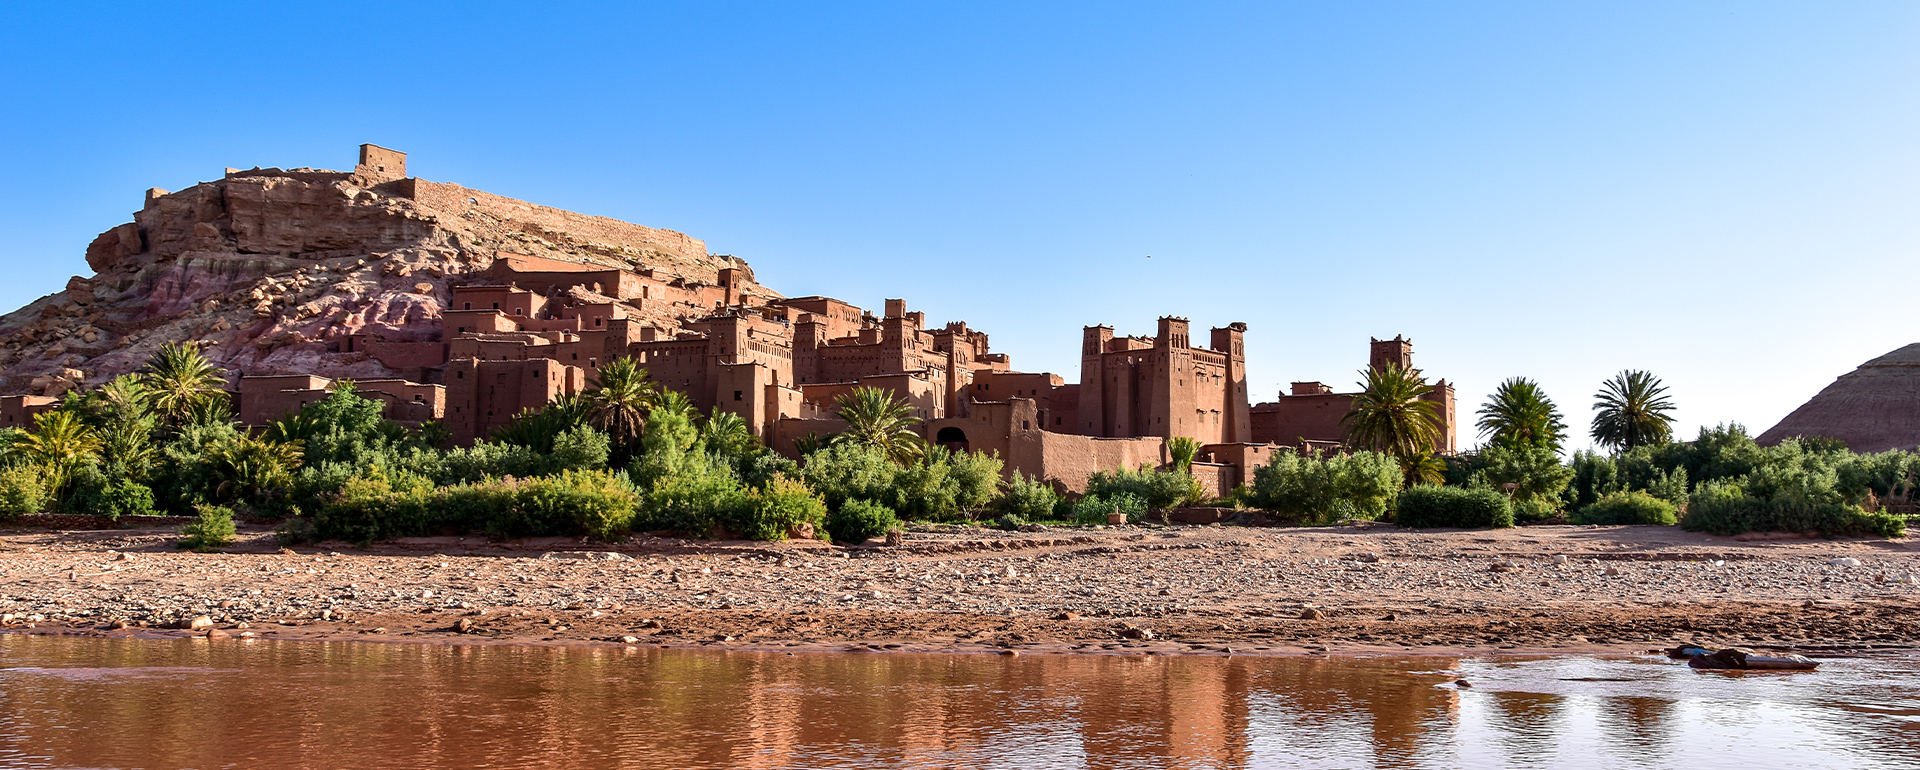 Aktivreisen in Marokko